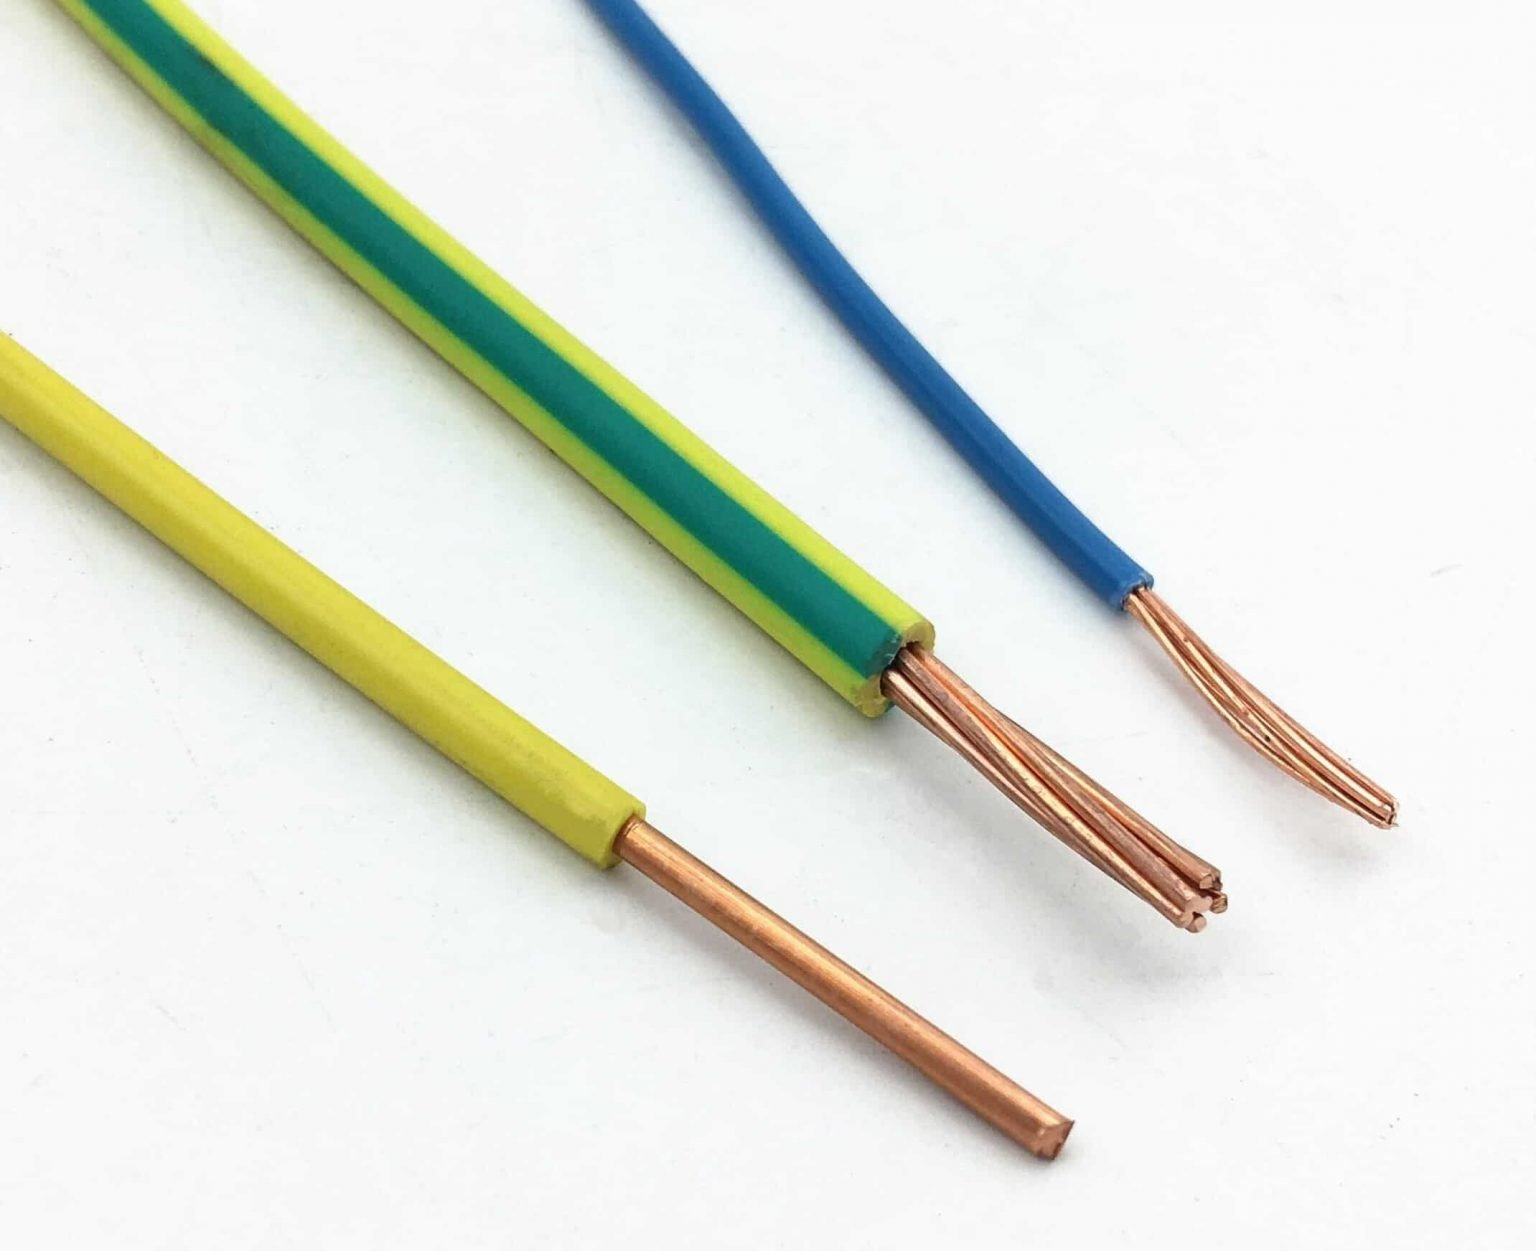 2.5mm copper wire